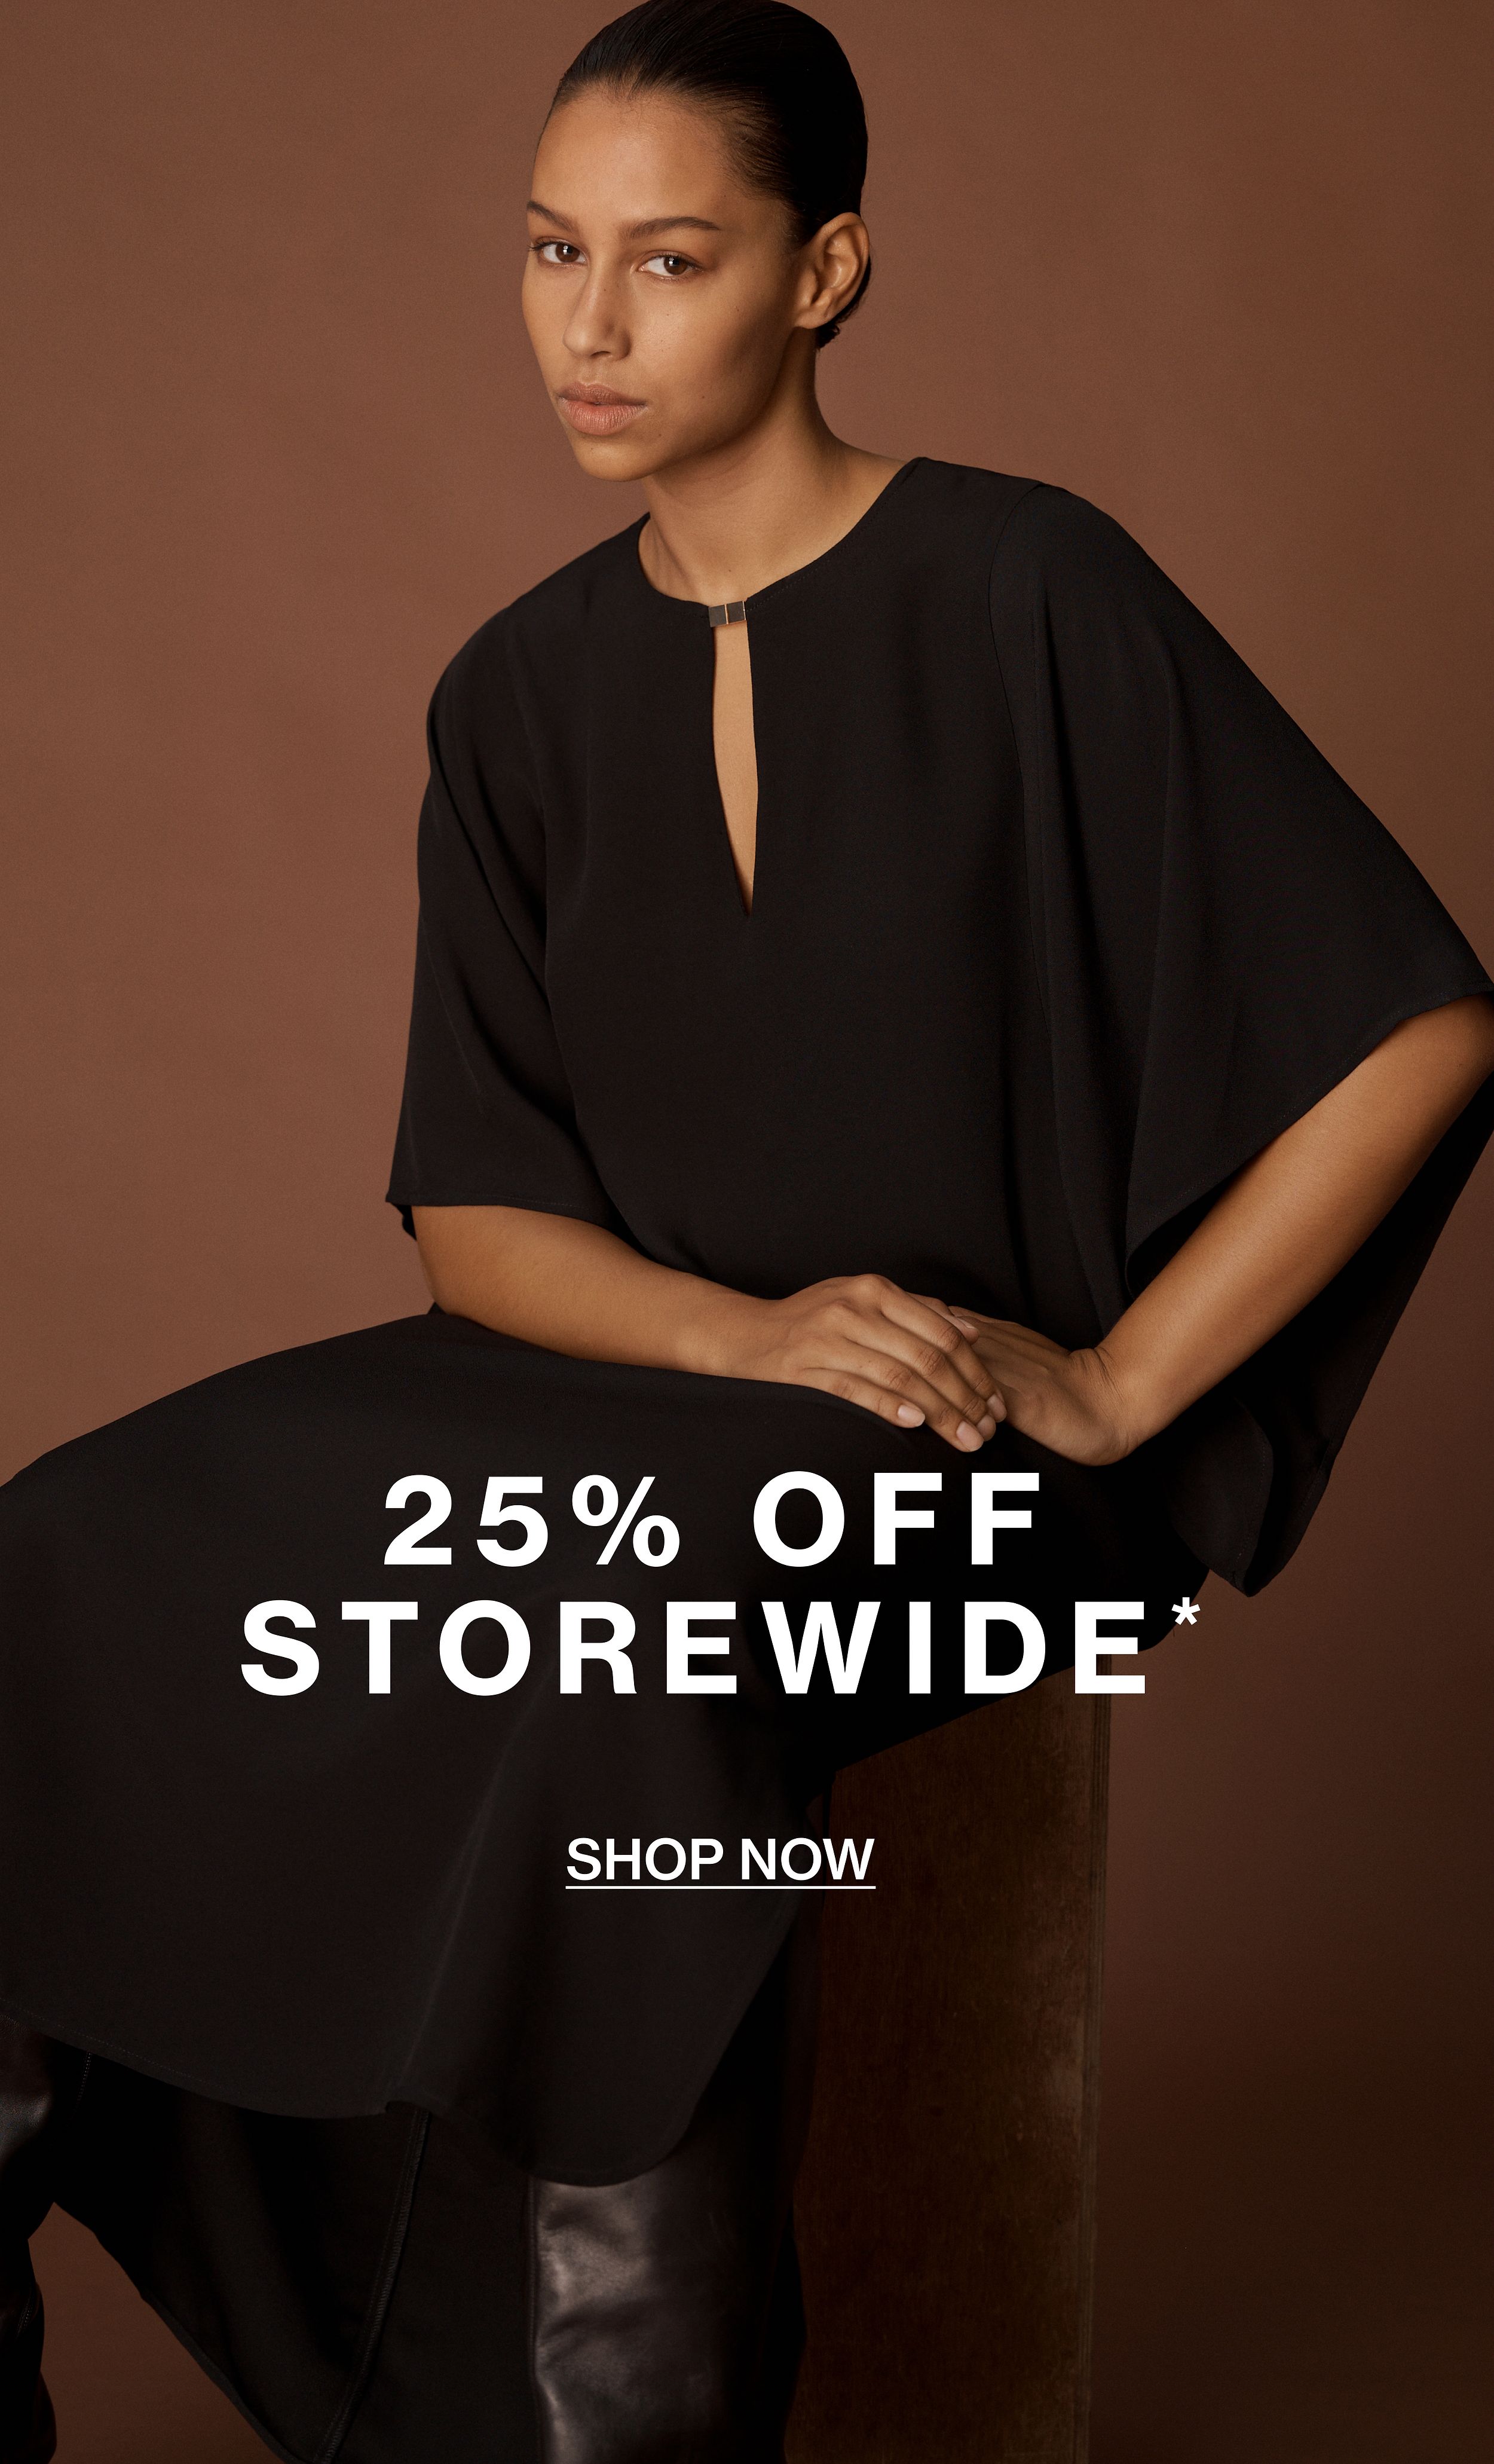 25% Off Storewide. Shop Now.